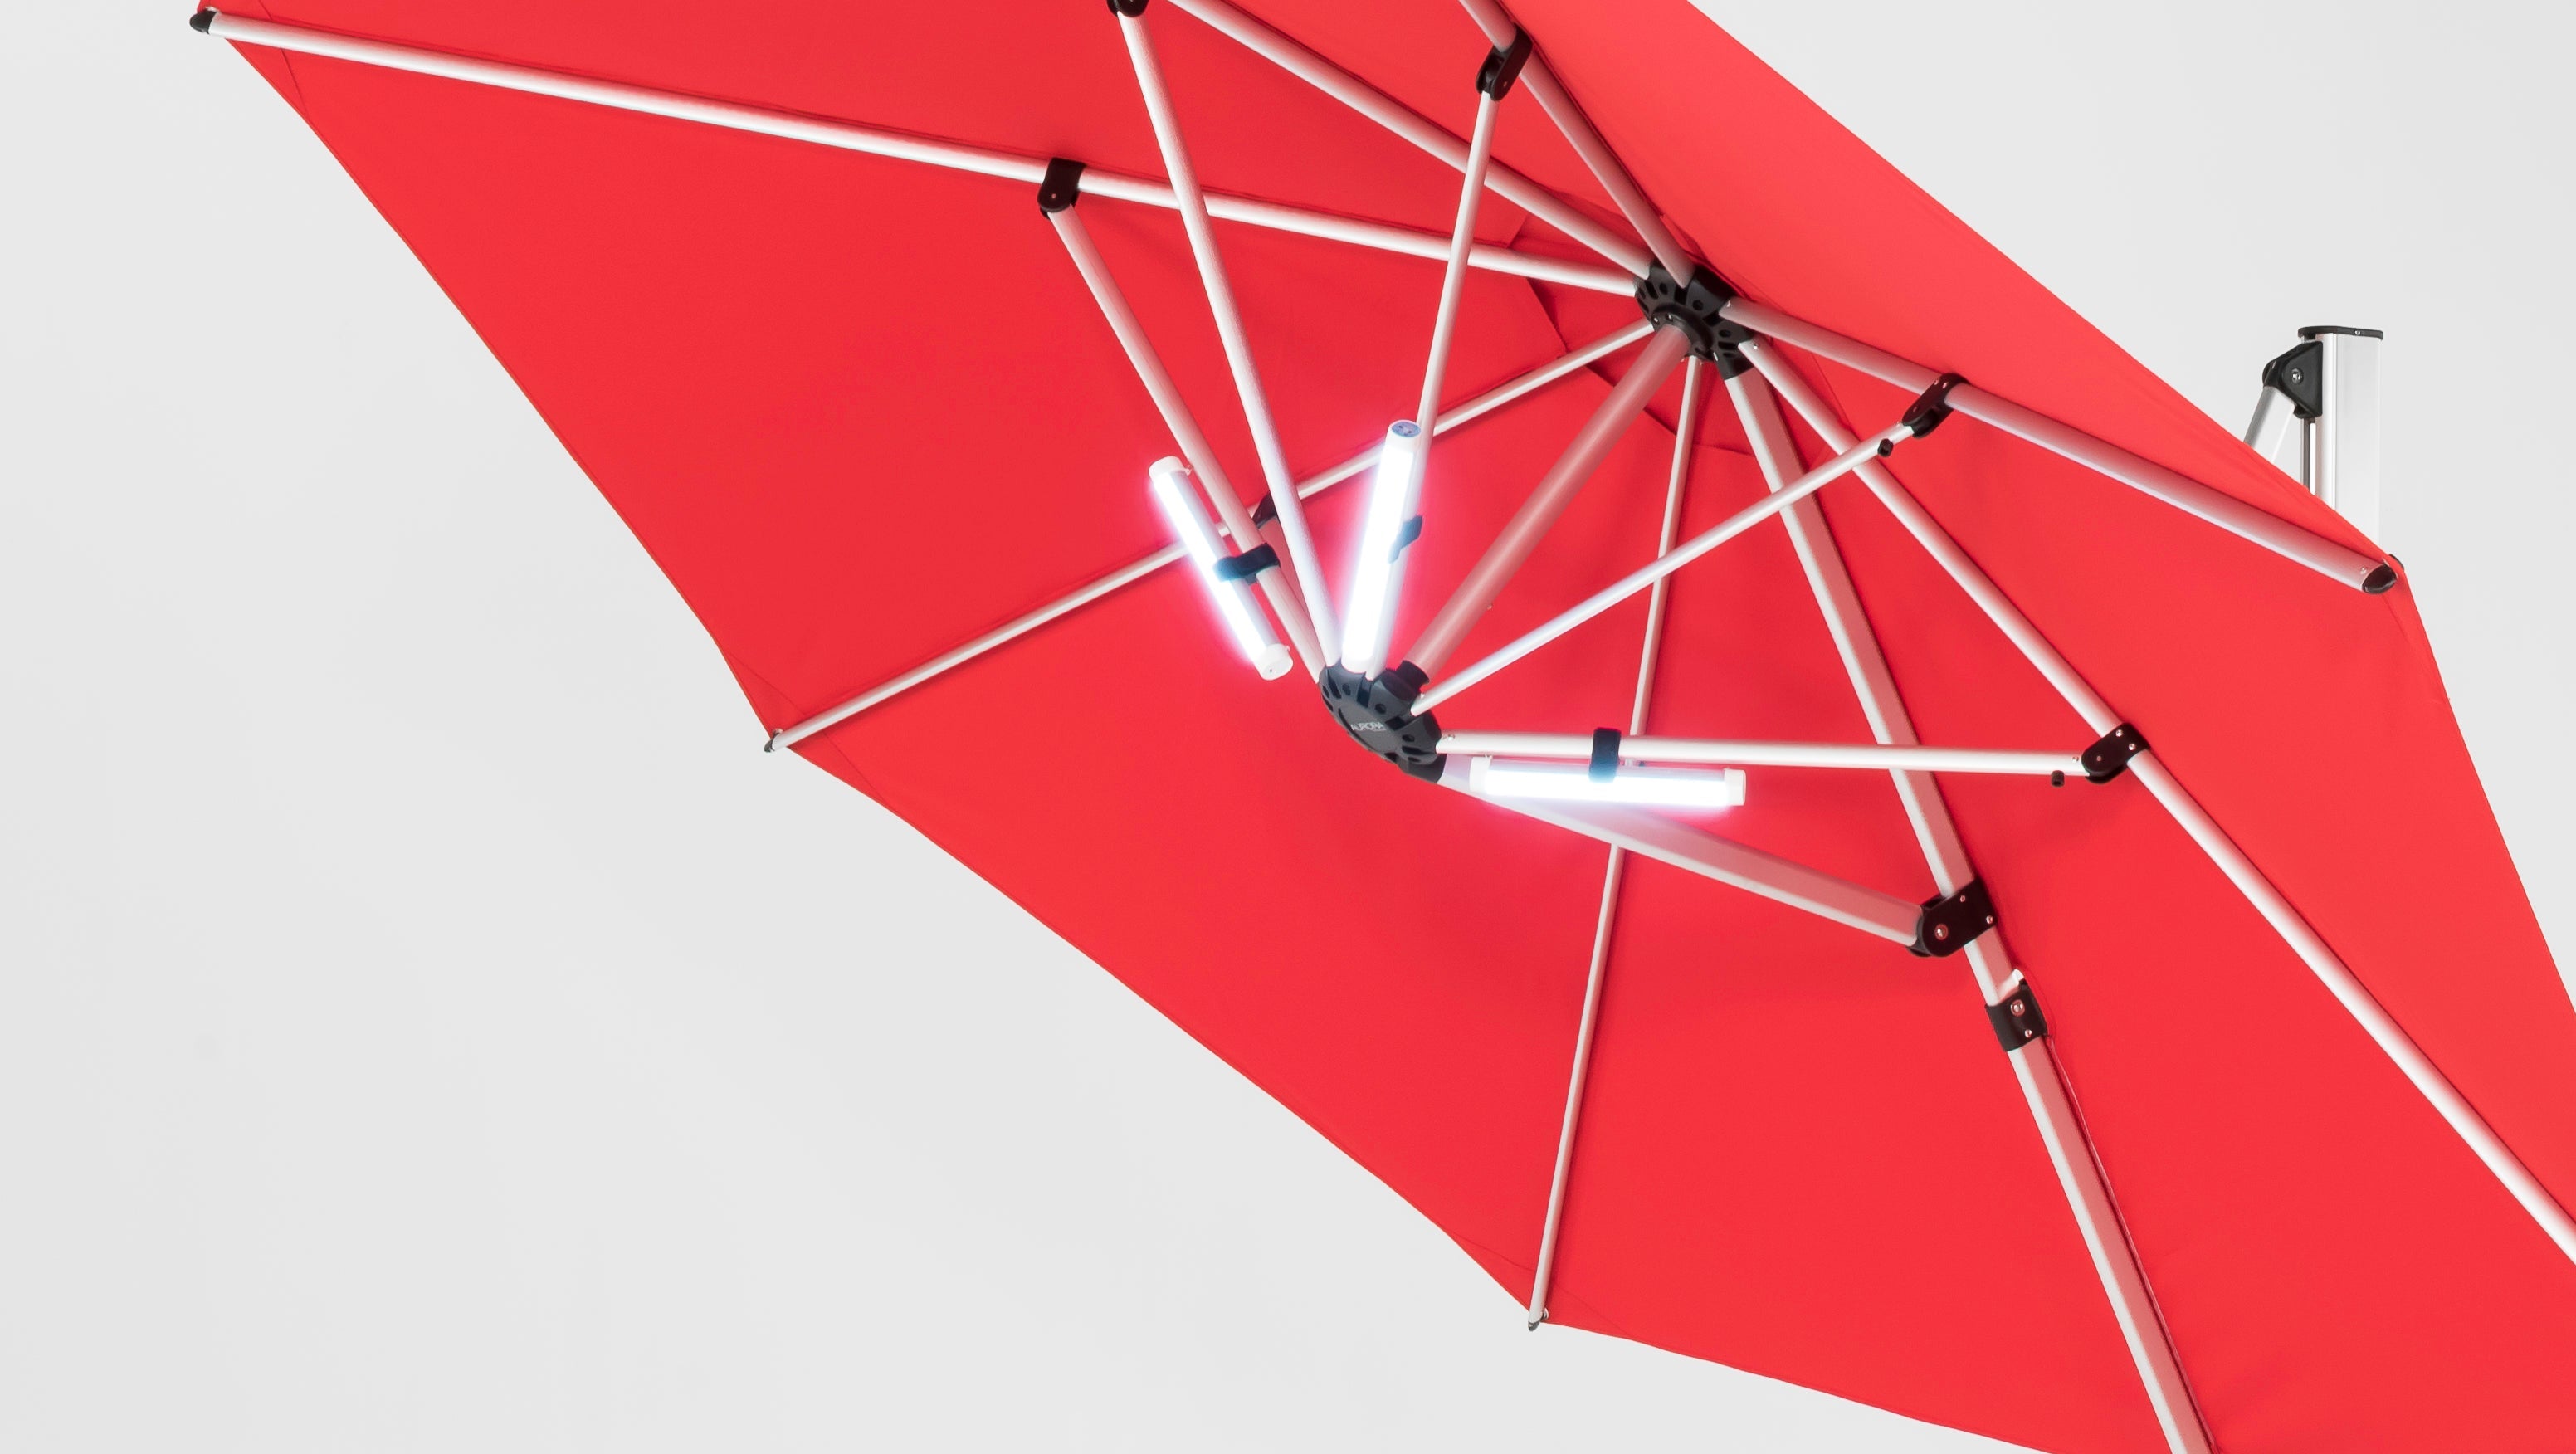 9 X 9F Square Aurora Premium Aluminum Cantilever Umbrella by Frankford